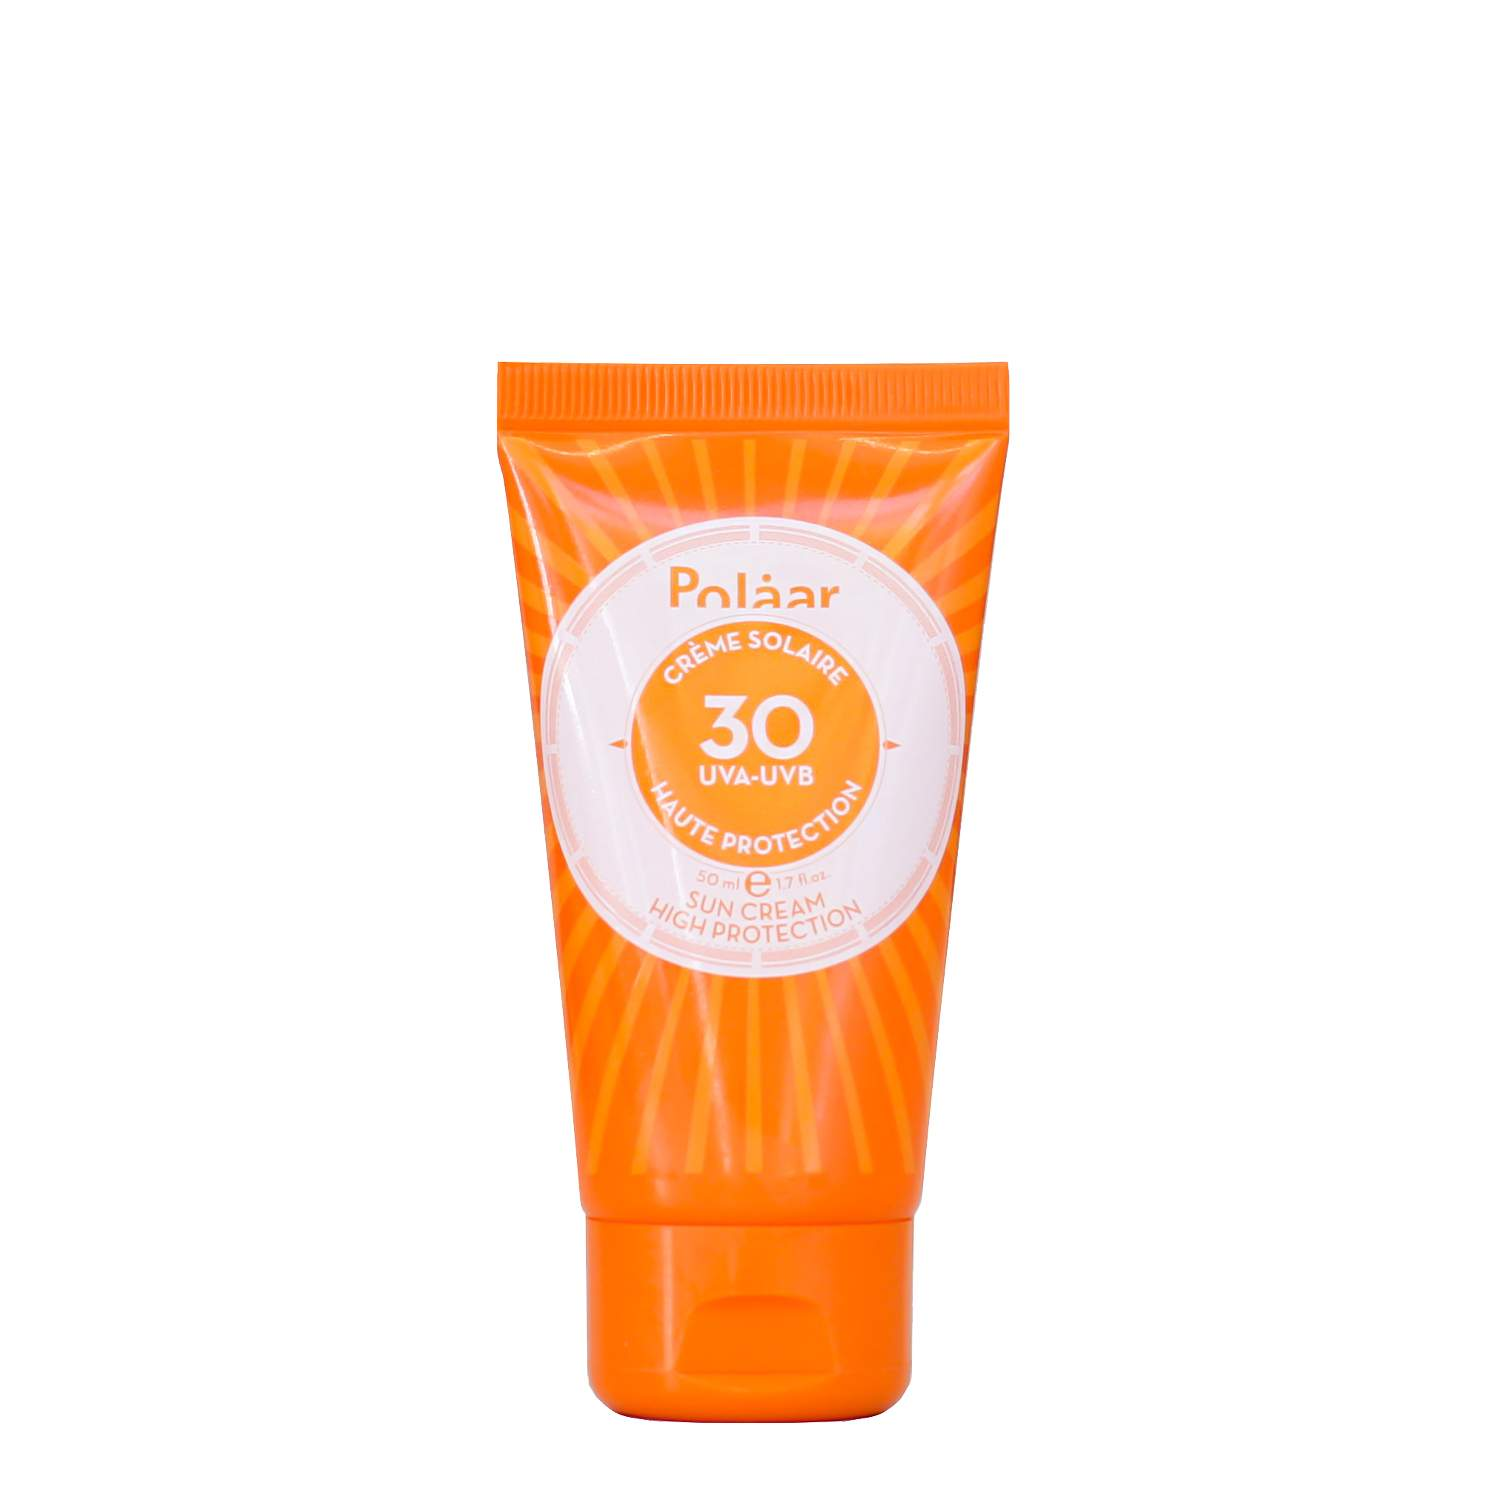 Polaar High Protection Sun Cream SPF30 Polaar High Protection Sun Cream SPF30 1